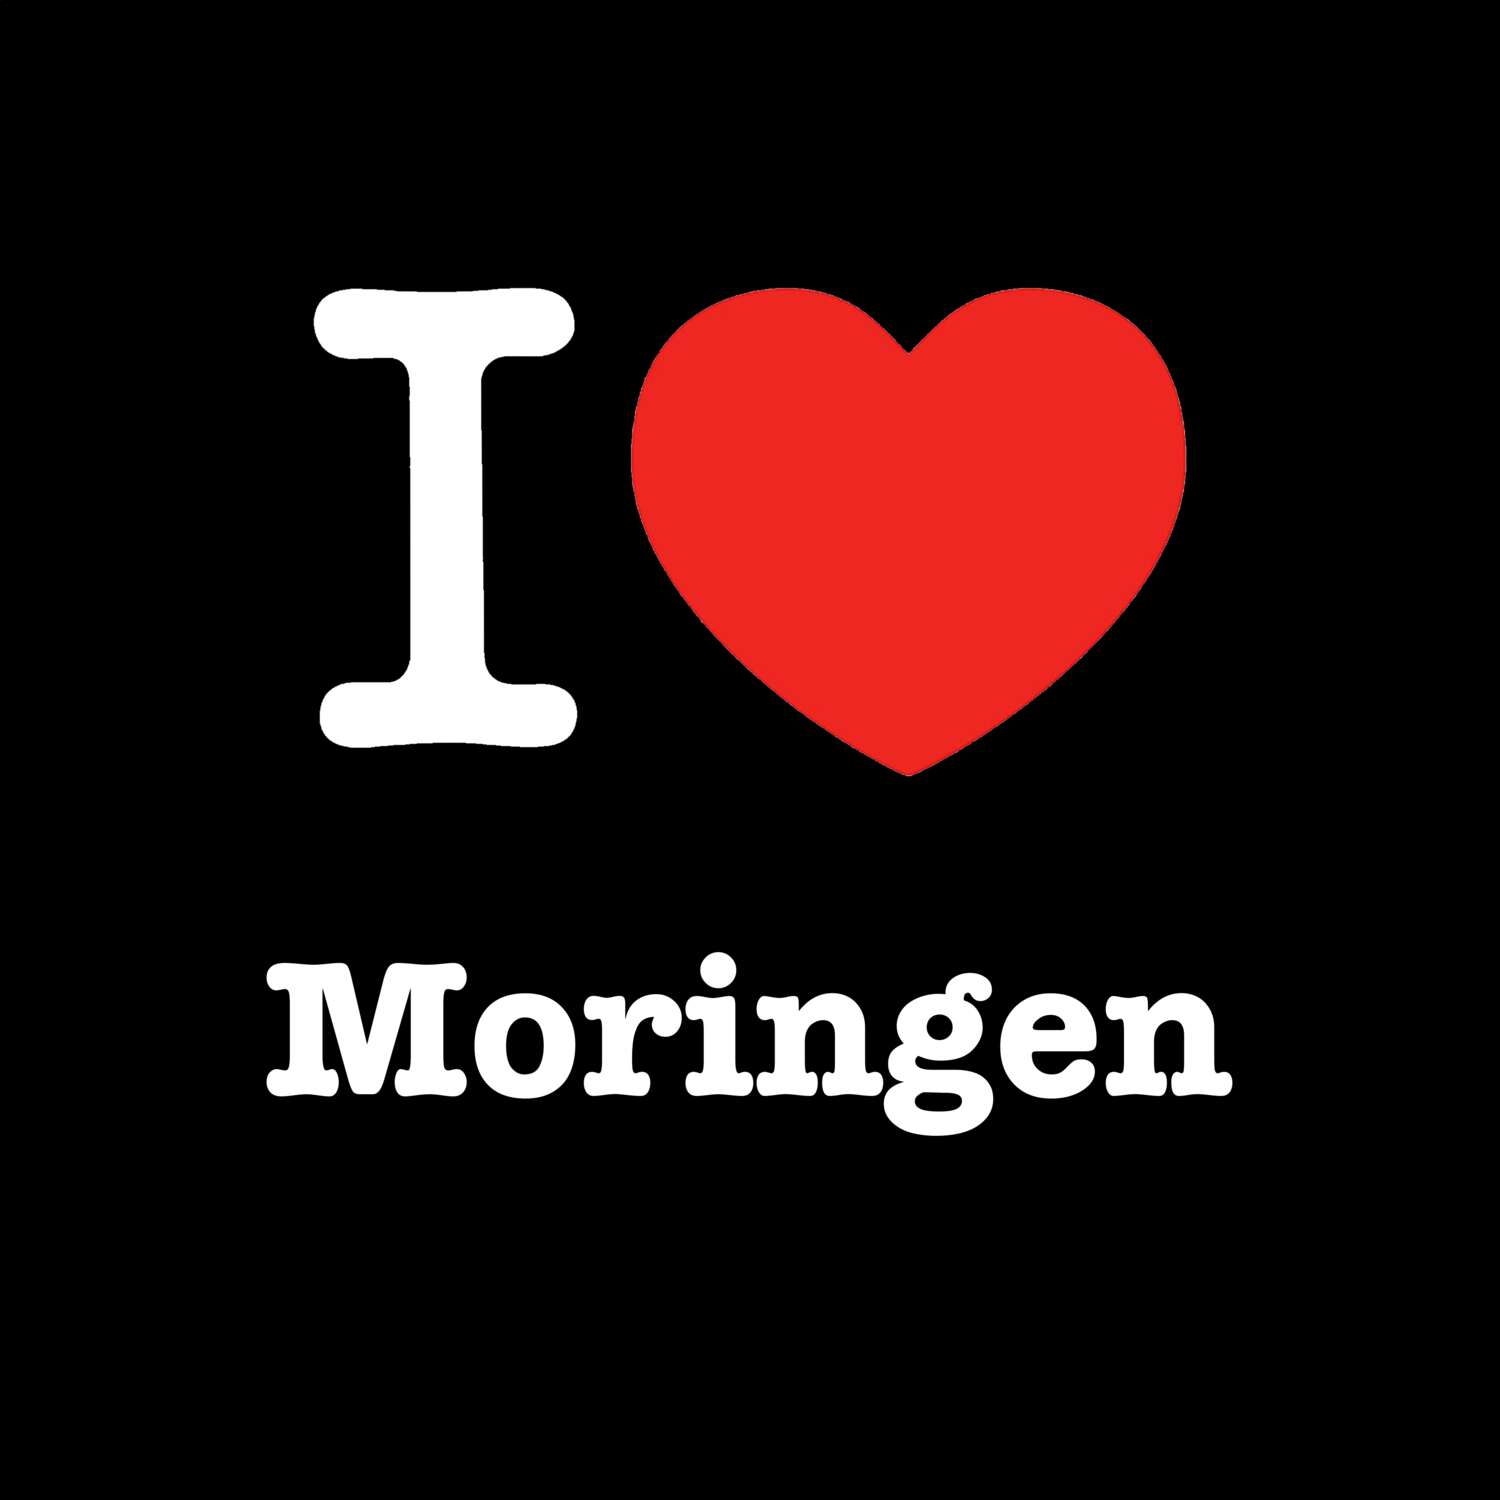 Moringen T-Shirt »I love«